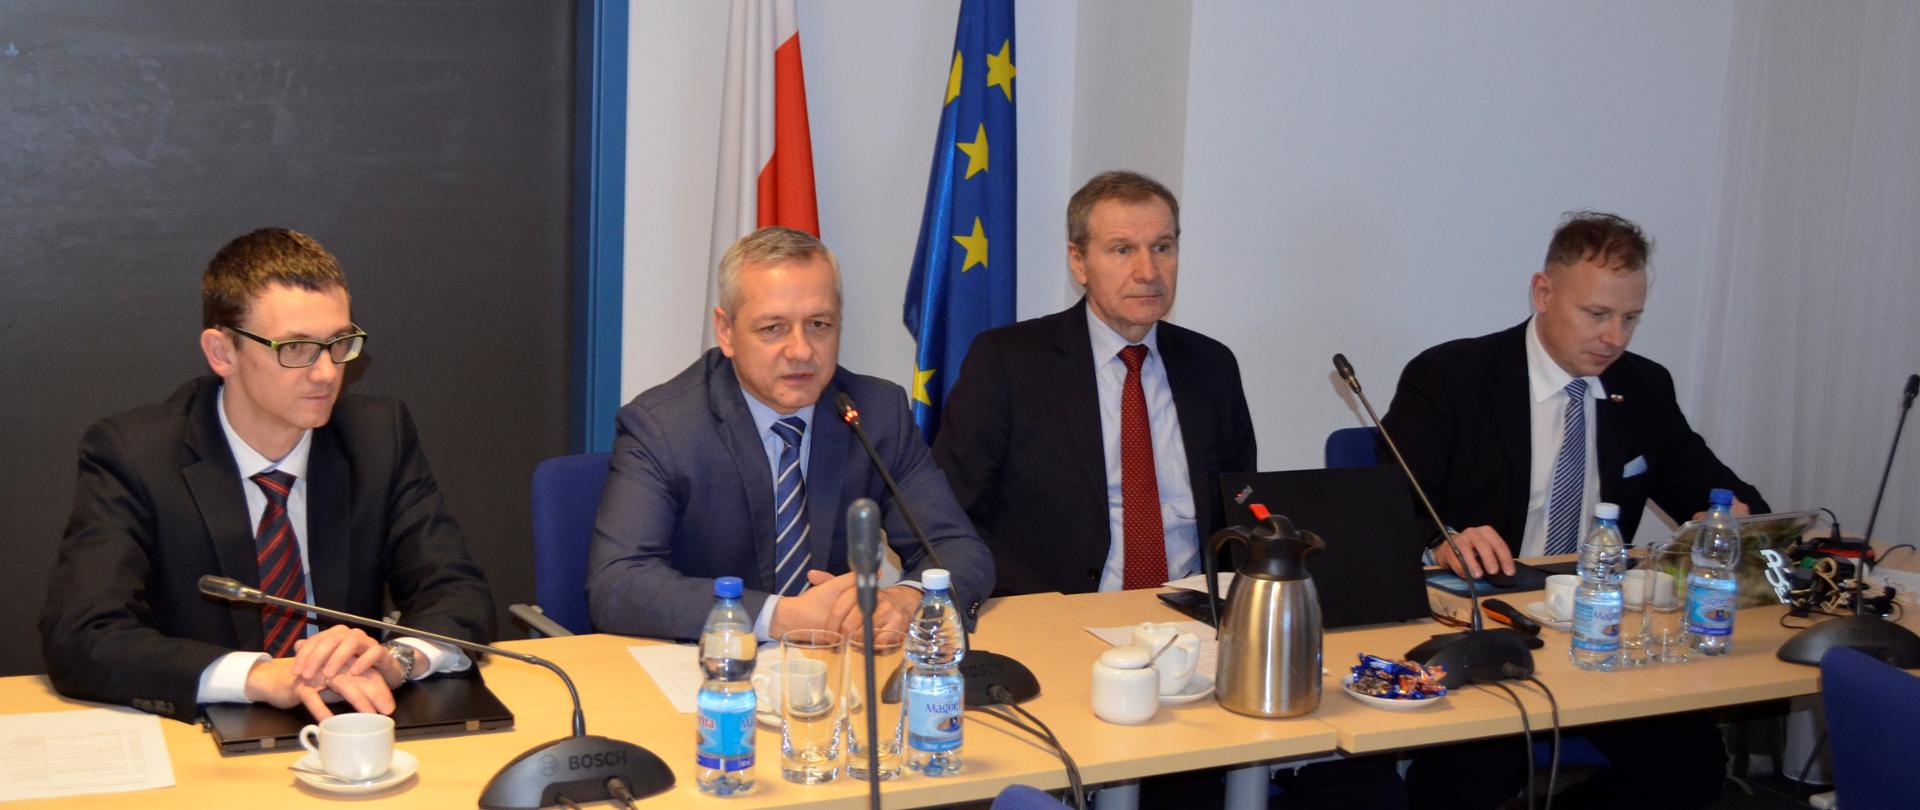 Od lewej siedzą: Karol Okoński (pełnomocnik rządu ds. cyberbezpieczeństwa), Marek Zagórski (minister cyfryzacji), Krzysztof Silicki (p.o. dyrektora NASK), Robert Kośla (dyrektor departamentu cybebezpieczeństwa w MC).